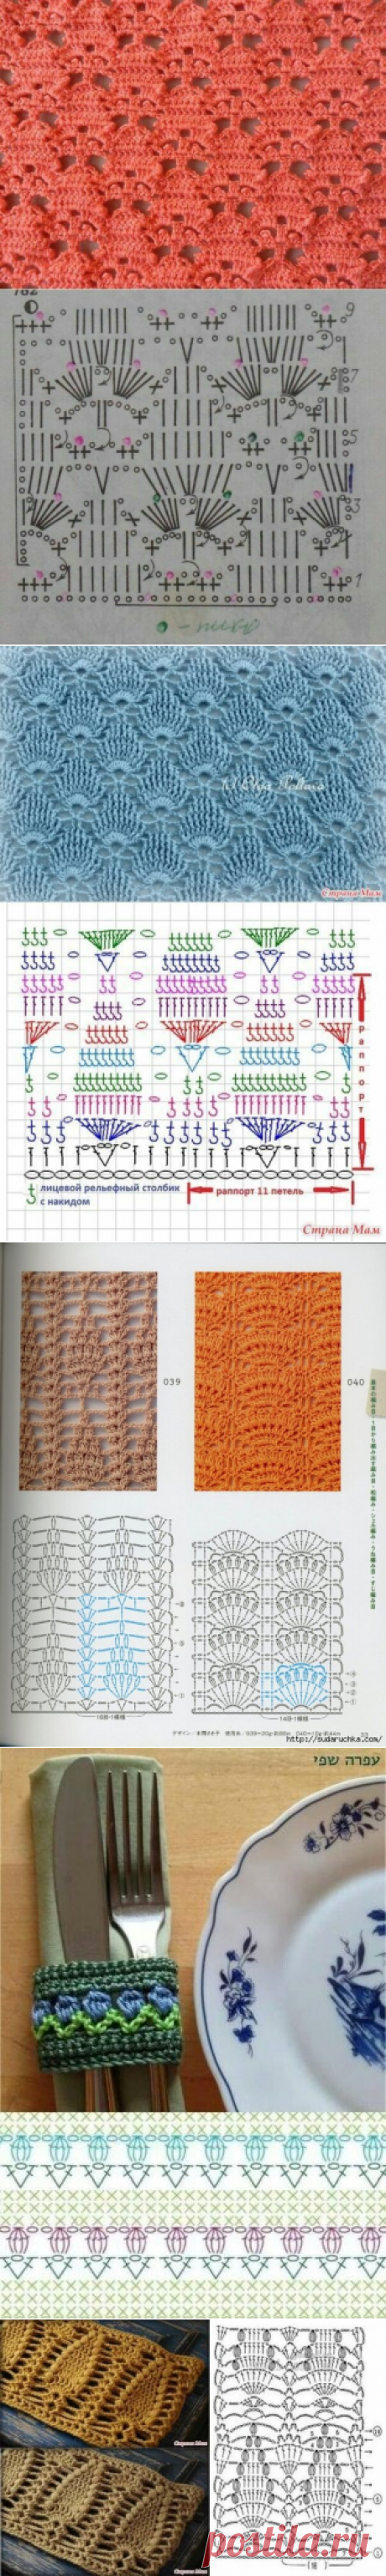 Нашла очень красивые узоры для вязания крючком (25 схем) - делюсь | Факультет рукоделия | Яндекс Дзен